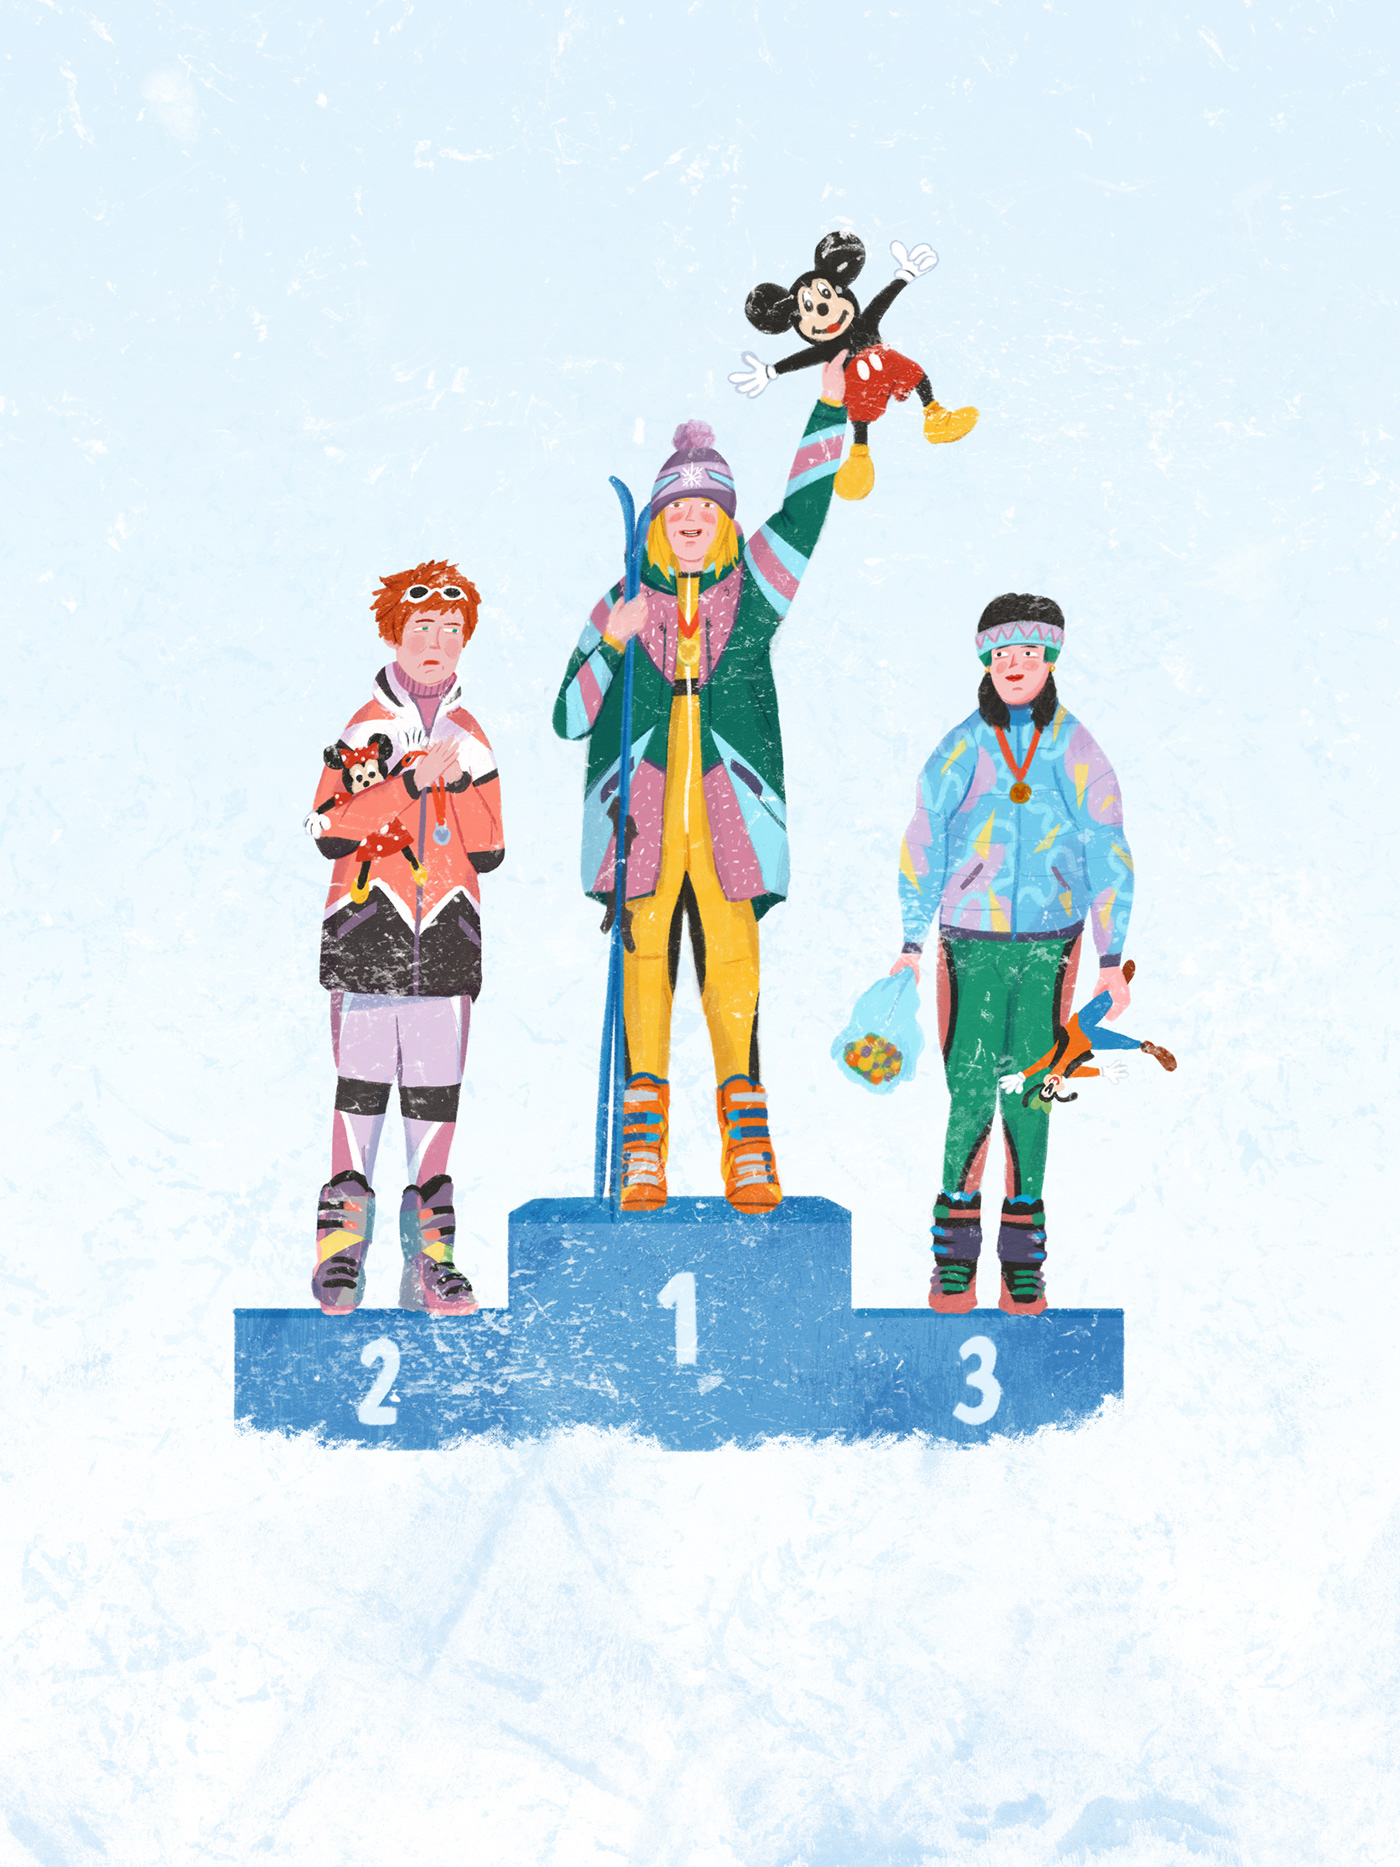 artwork book cover book design book illustration children book illustrations kidlit portrait publication skiing